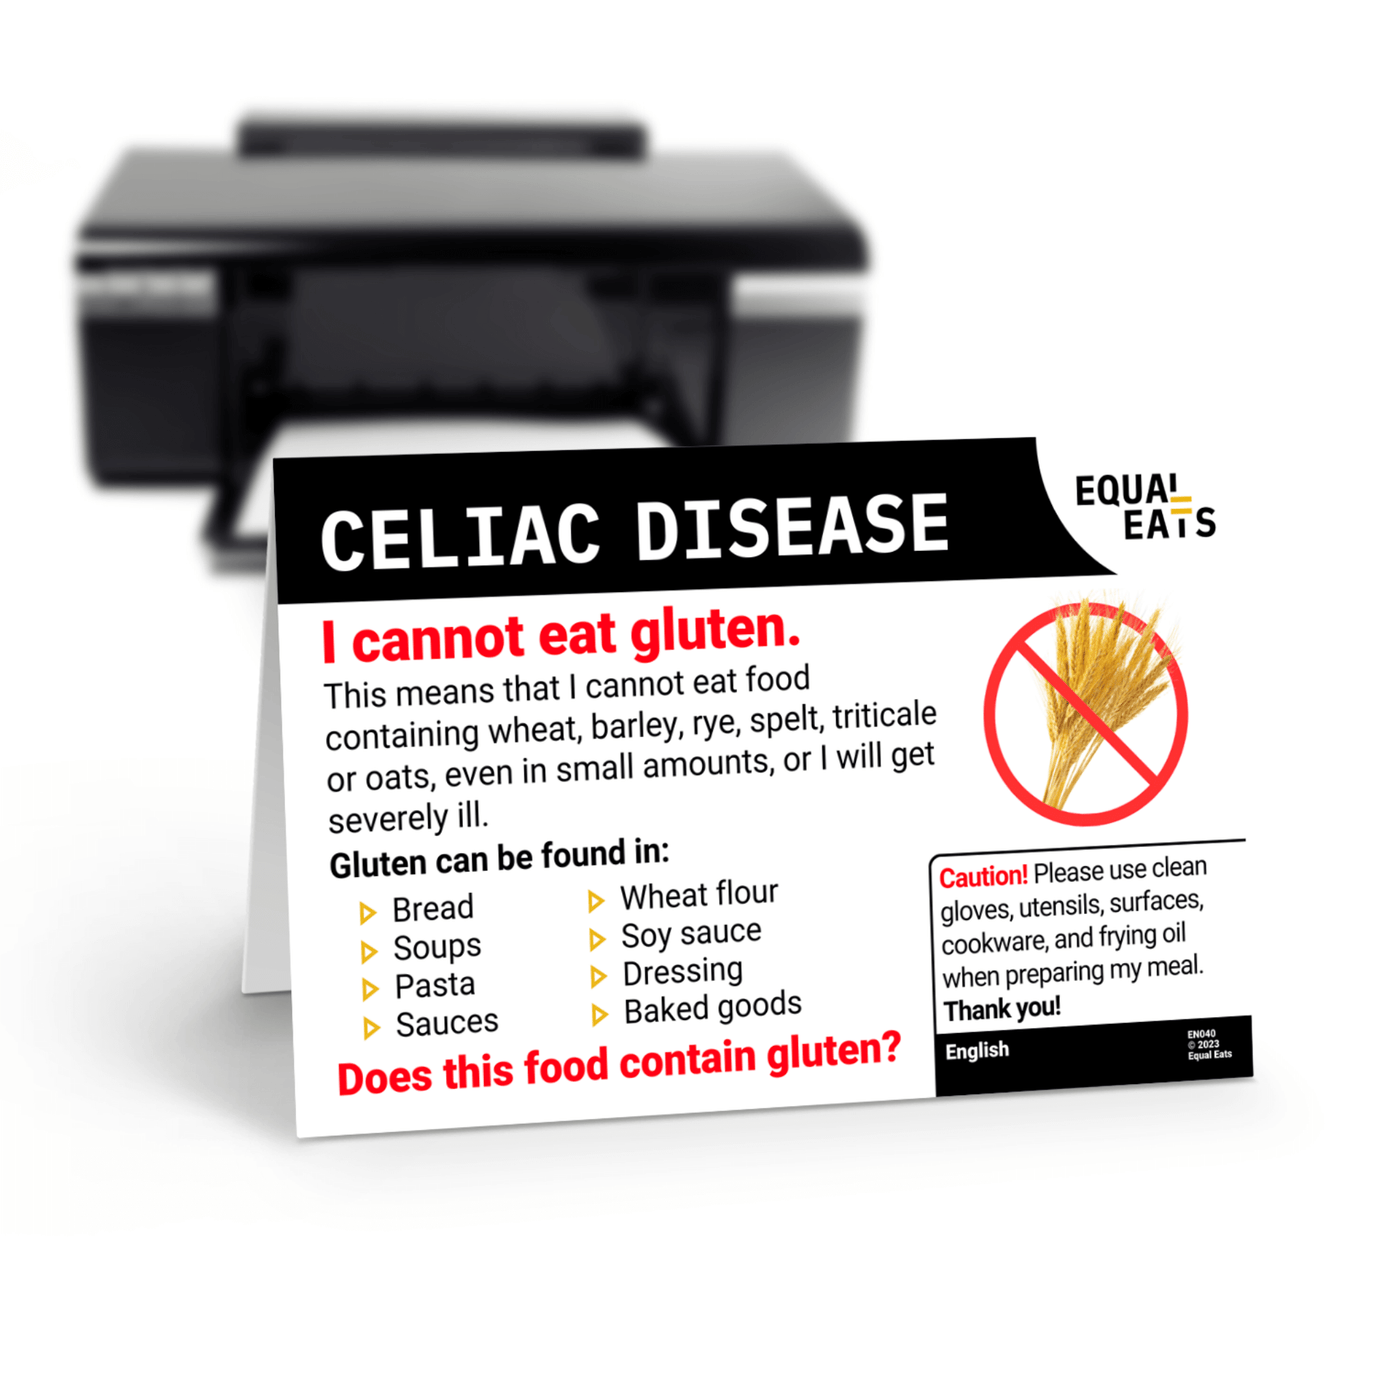 Celiac Disease Card by Equal Eats